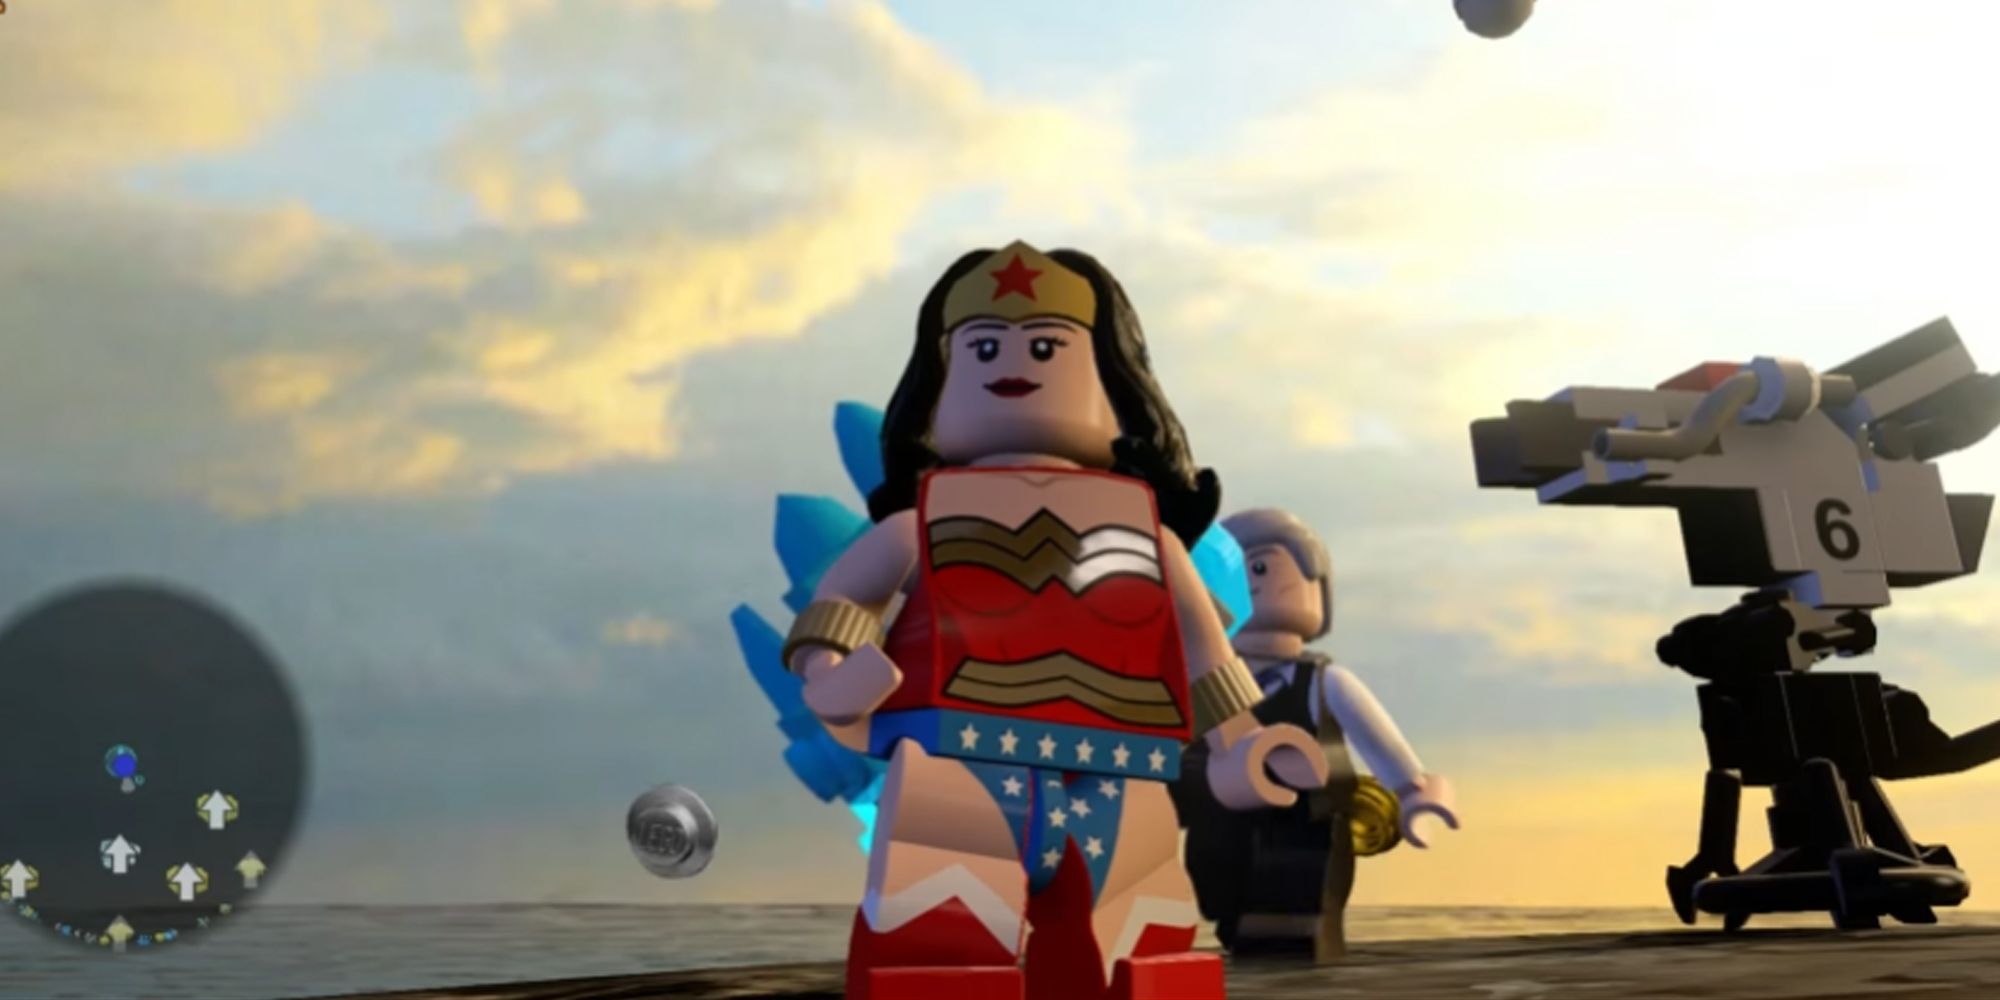 Wonder Woman freeplay in Lego Dimensions.